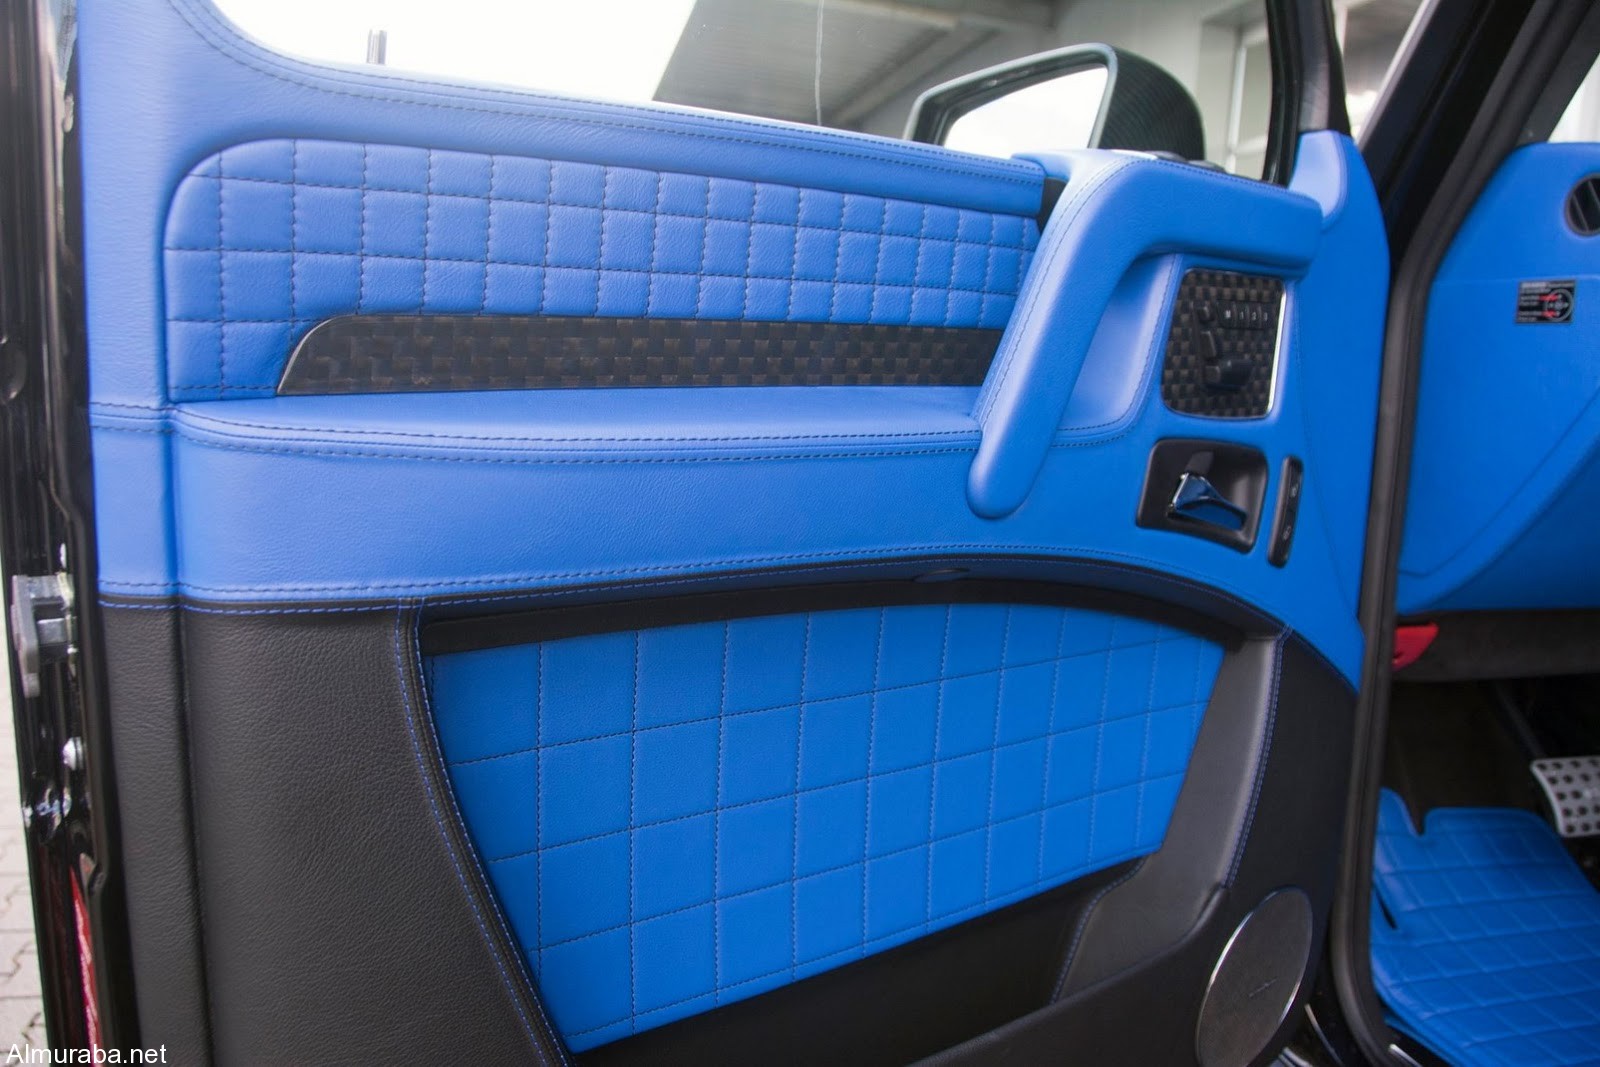 brabus-500-4x4-blue-interior-10